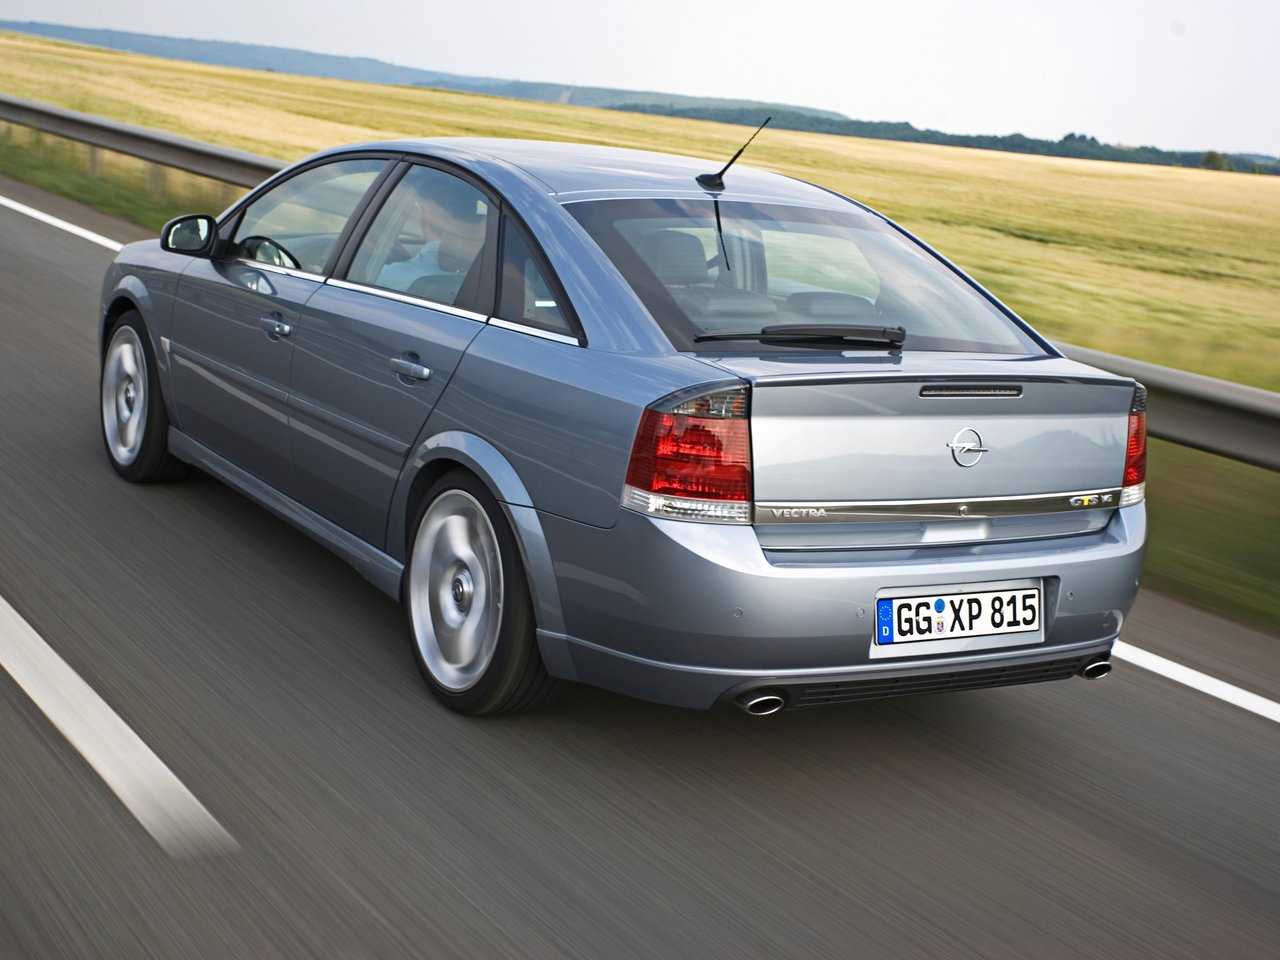 Opel c 1.8. Opel Vectra. Опель Вектра лифтбек 2008. Opel Vectra c. Опель Вектра хэтчбек 2008.